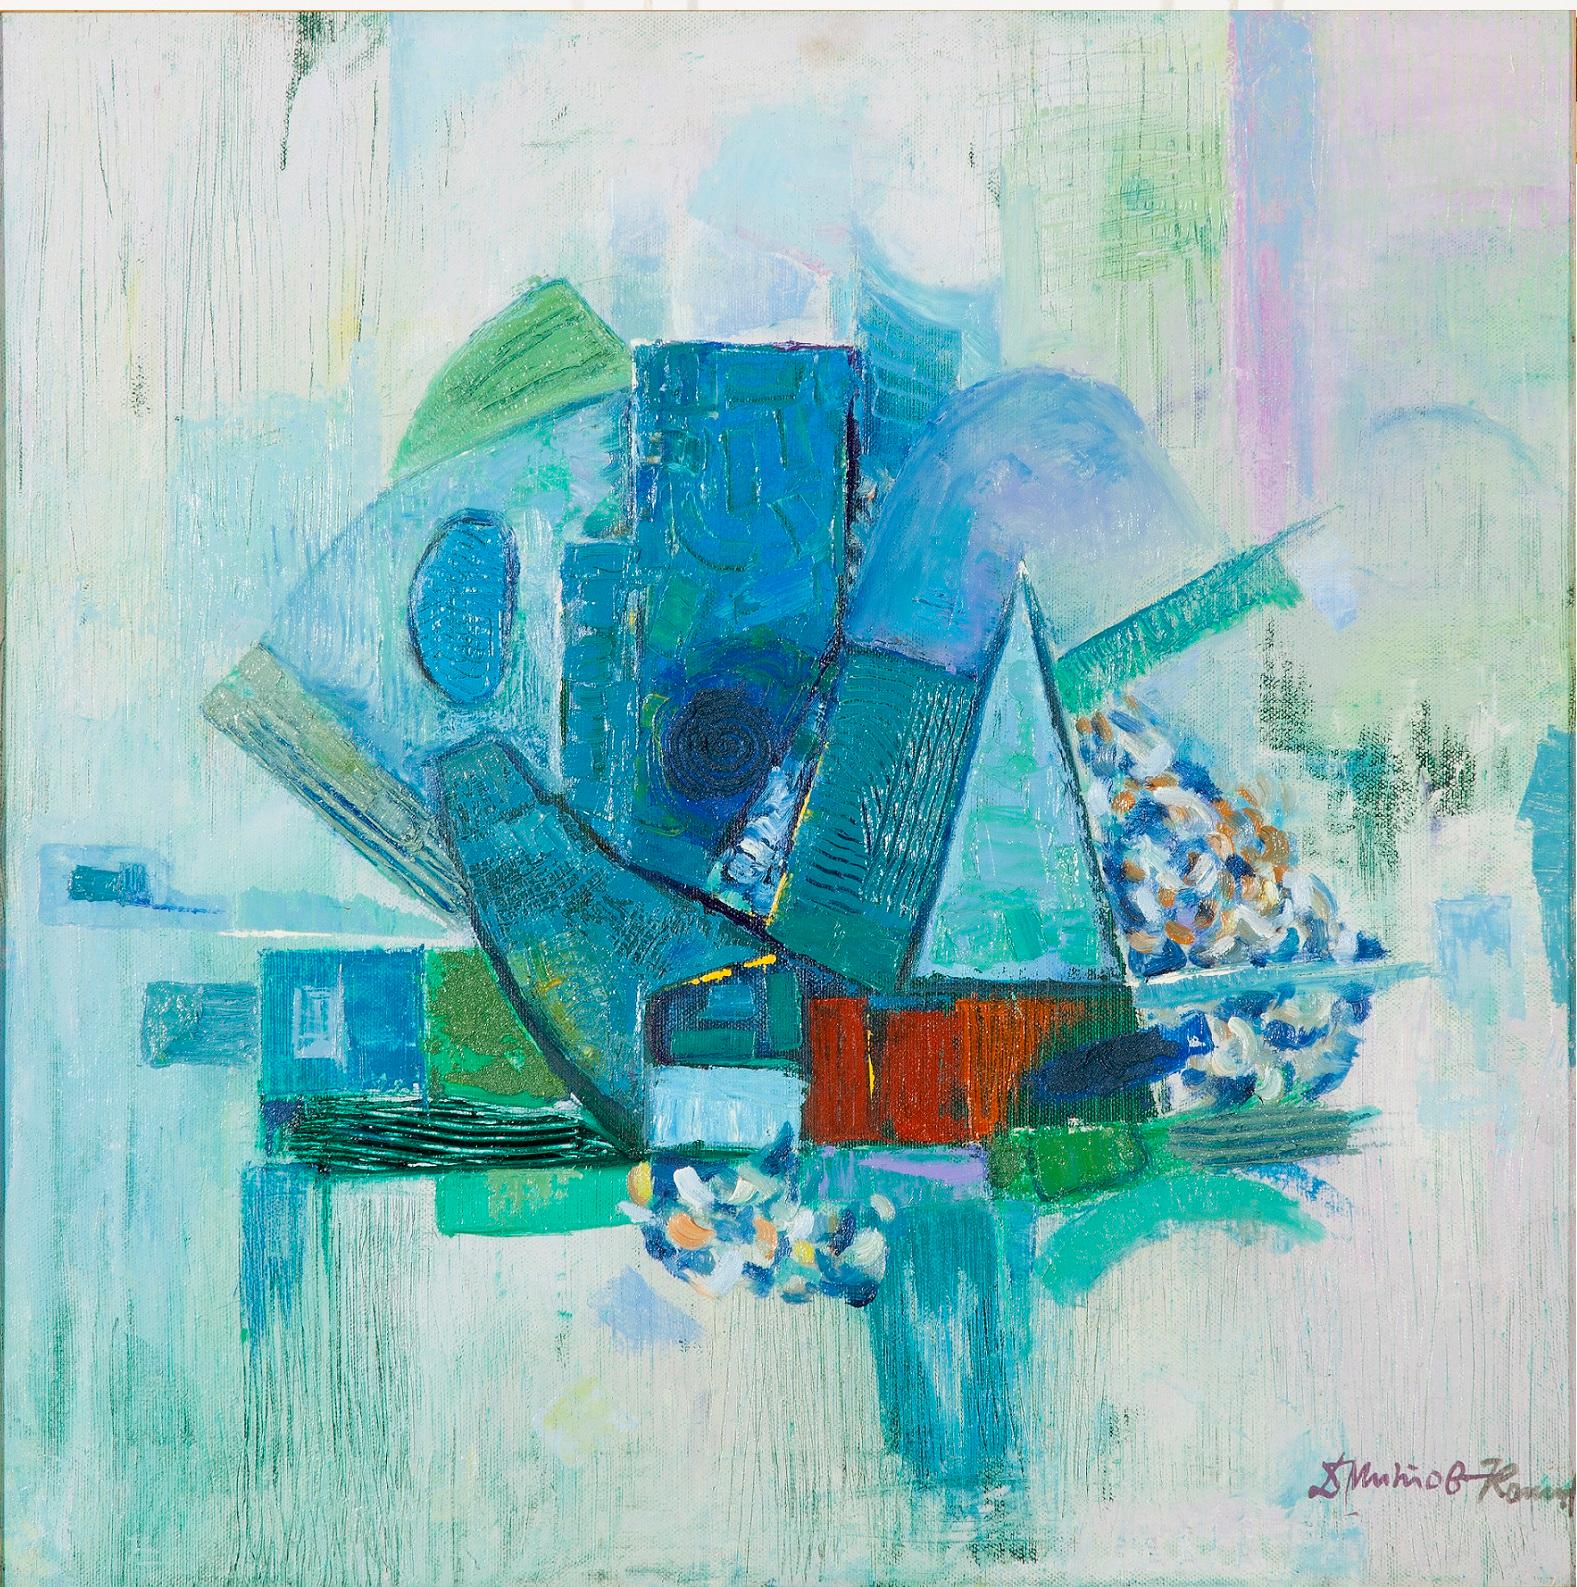 Dimitar Mitov - Komshin  Abstract Painting - Blue Expression I - Abstract Oil Painting Blue Green White Lilac White 